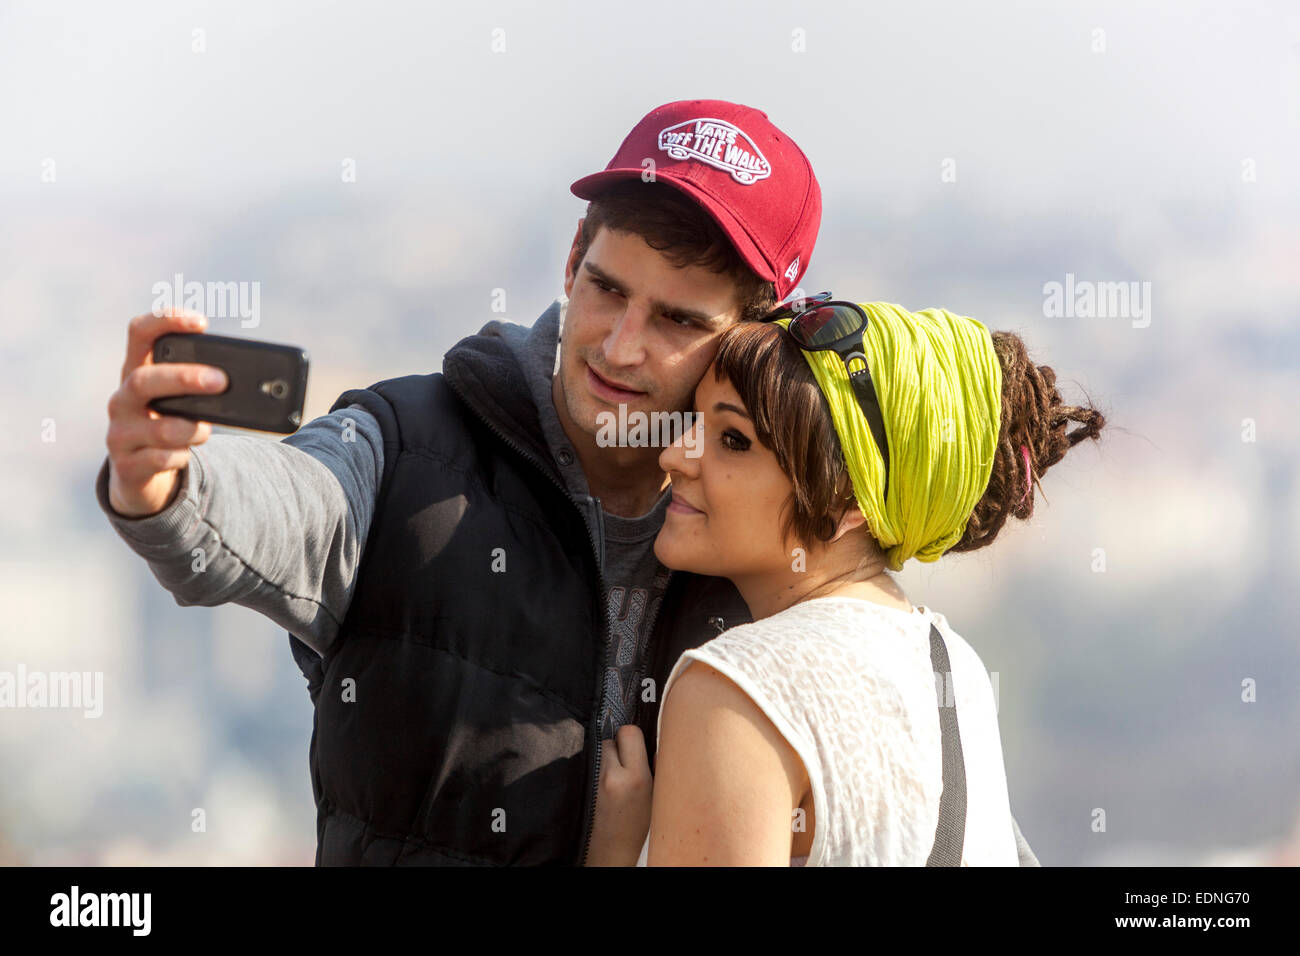 Coppia romancing spara un selfie mobile, Praga Repubblica Ceca Praga coppia romantica Foto Stock